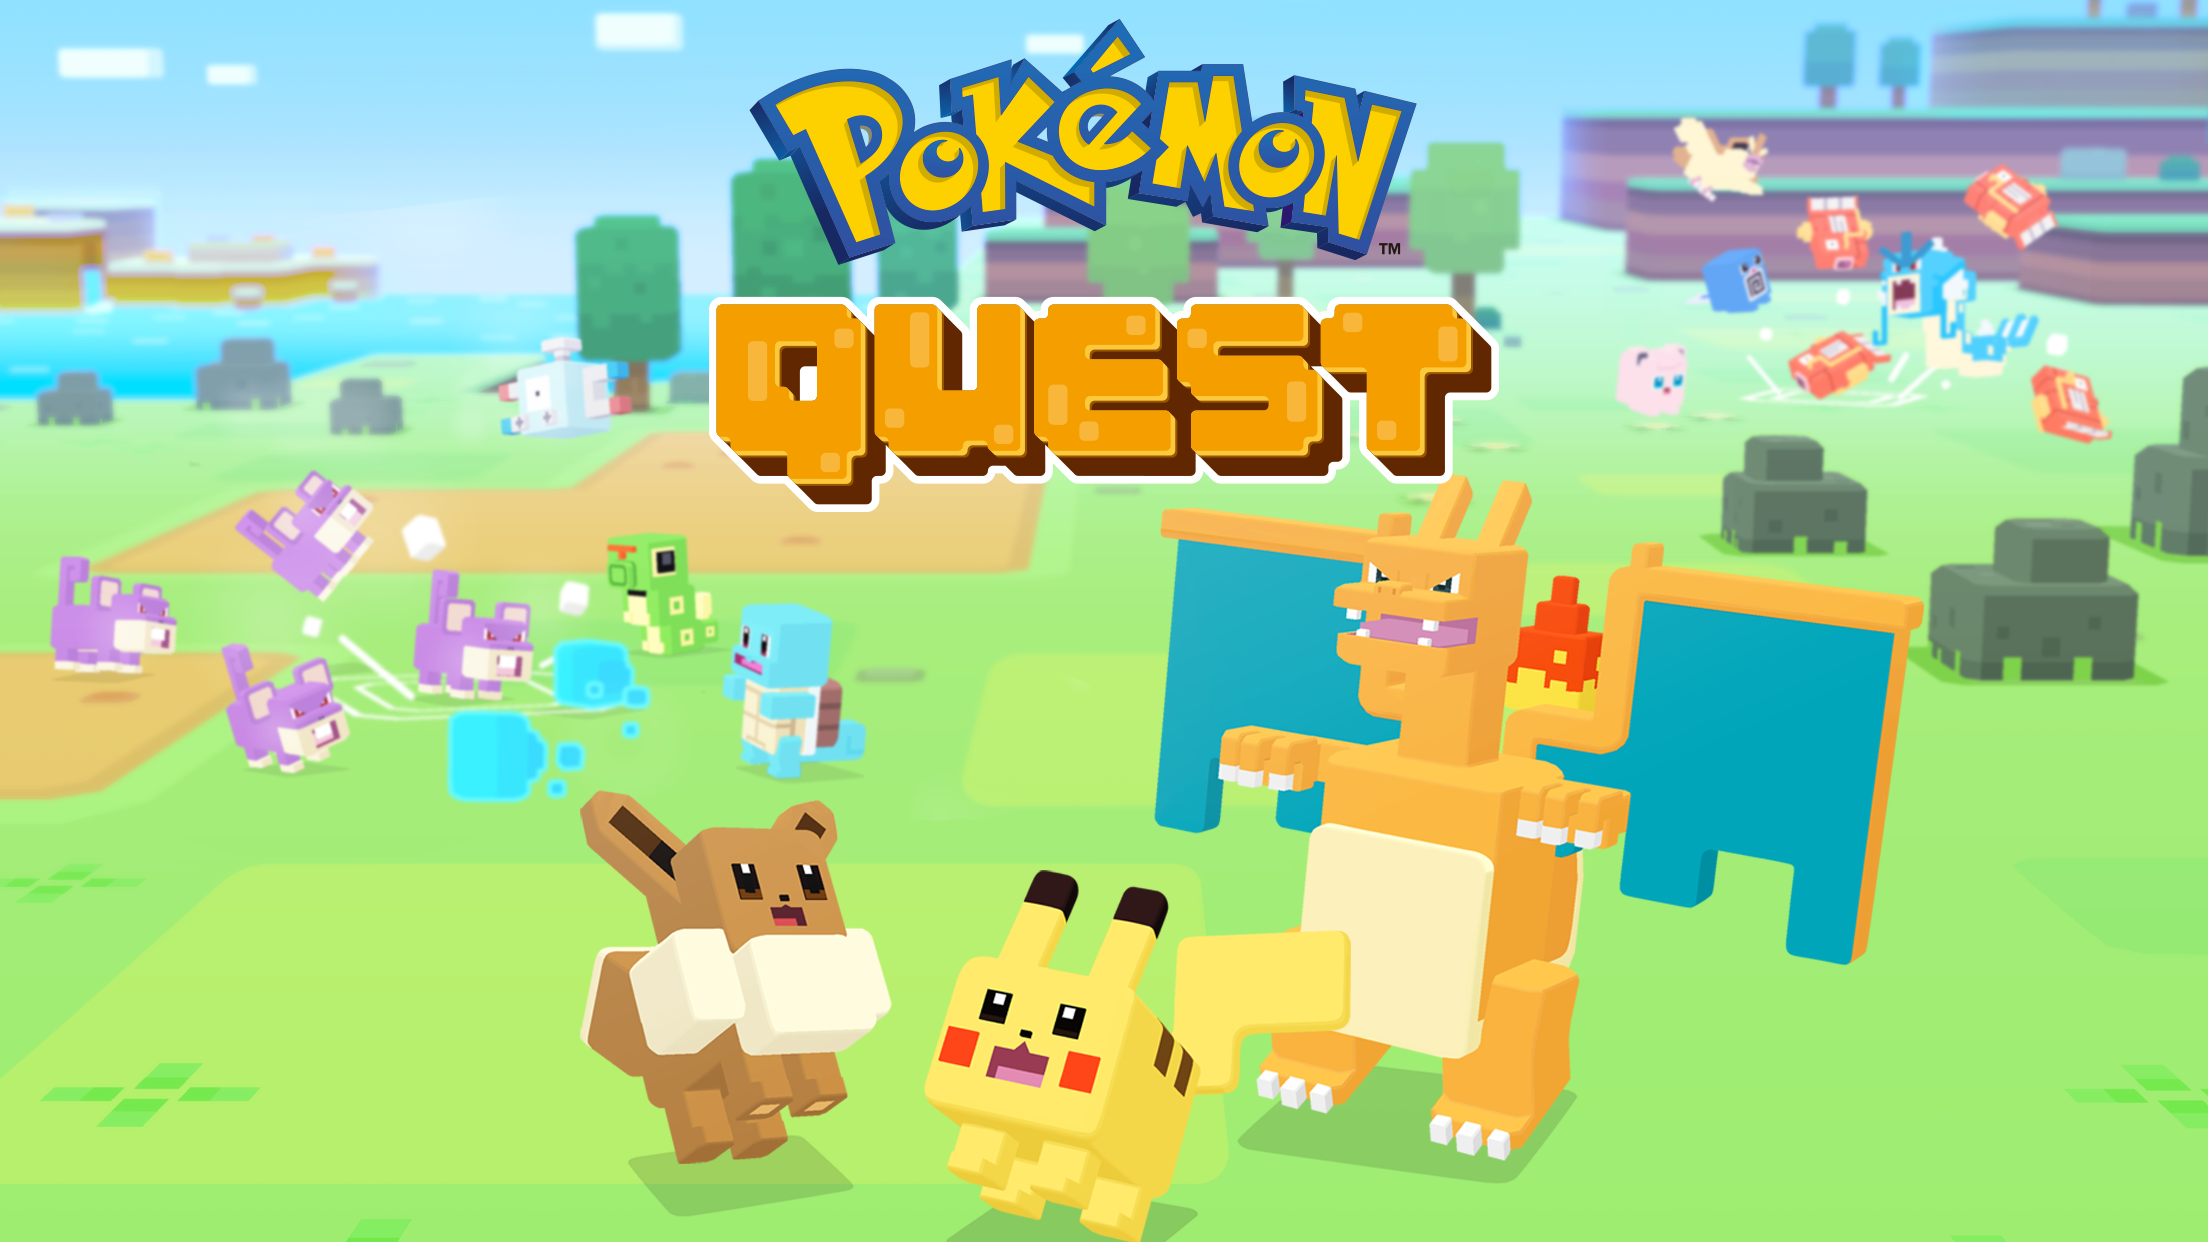 Screenshot 1 of Pokémon Quest 1.0.8